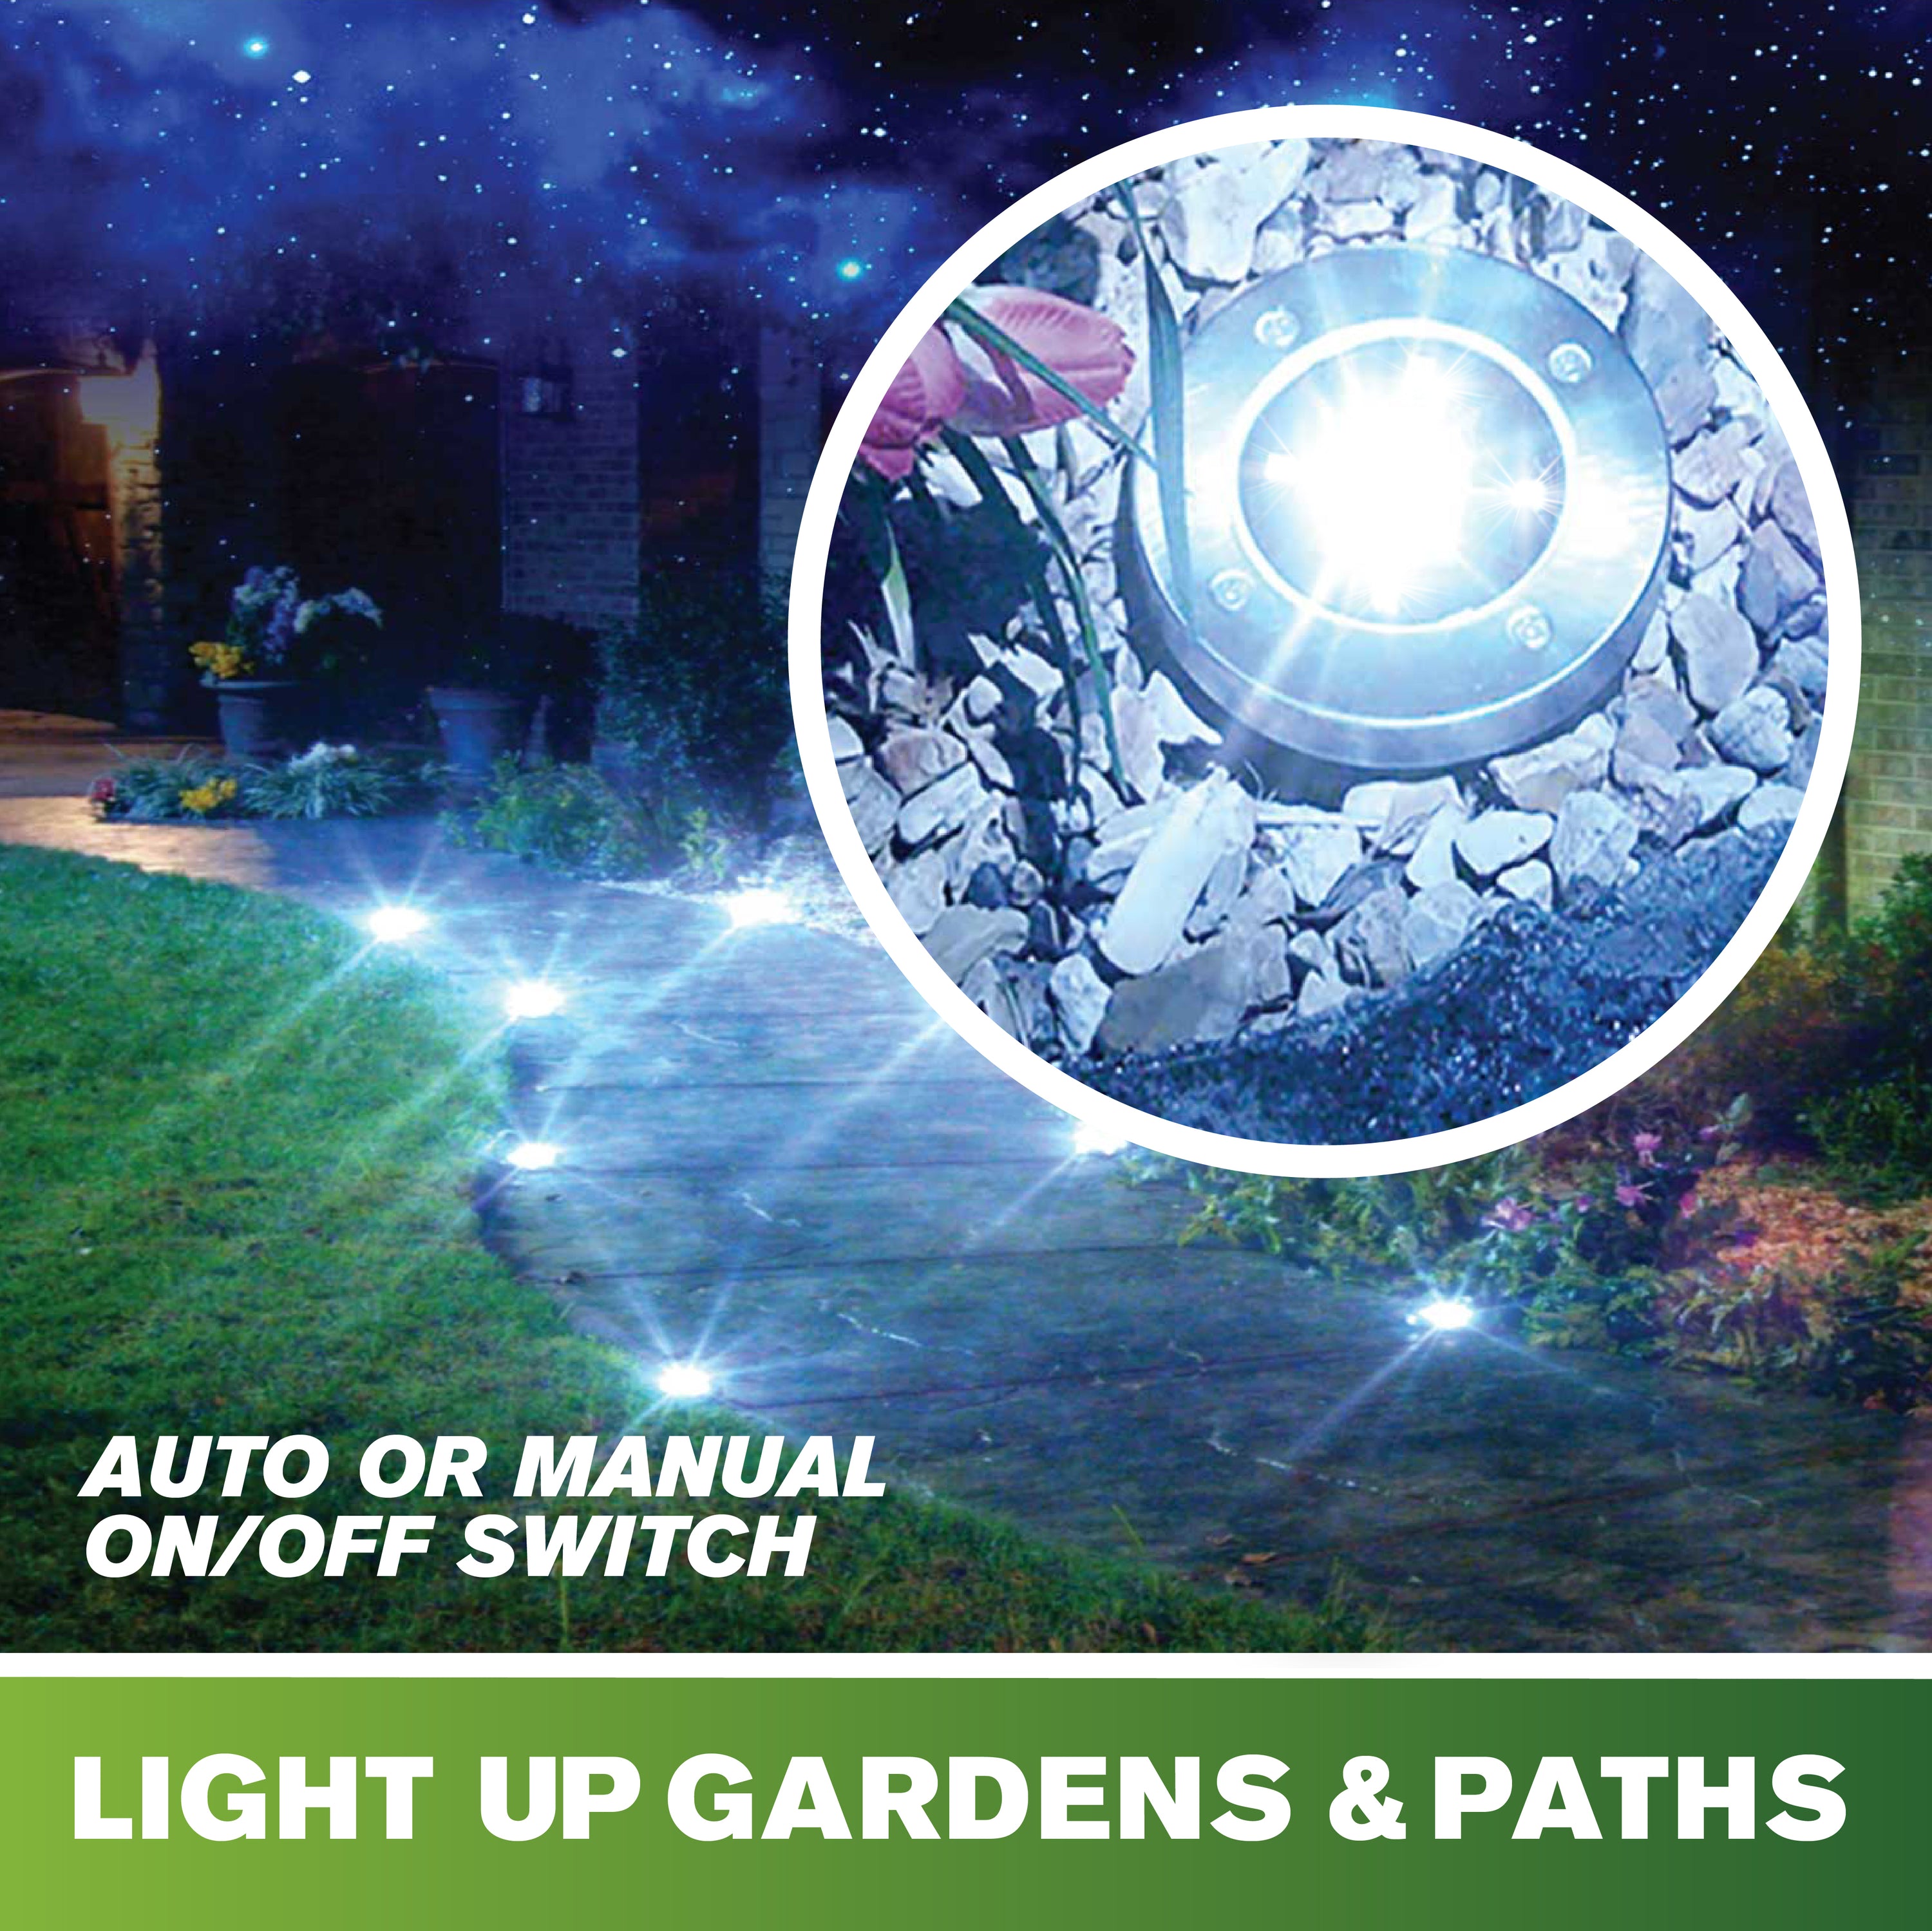 Bell + Howell Pathway & Landscape Disk Lights - 4 Pack